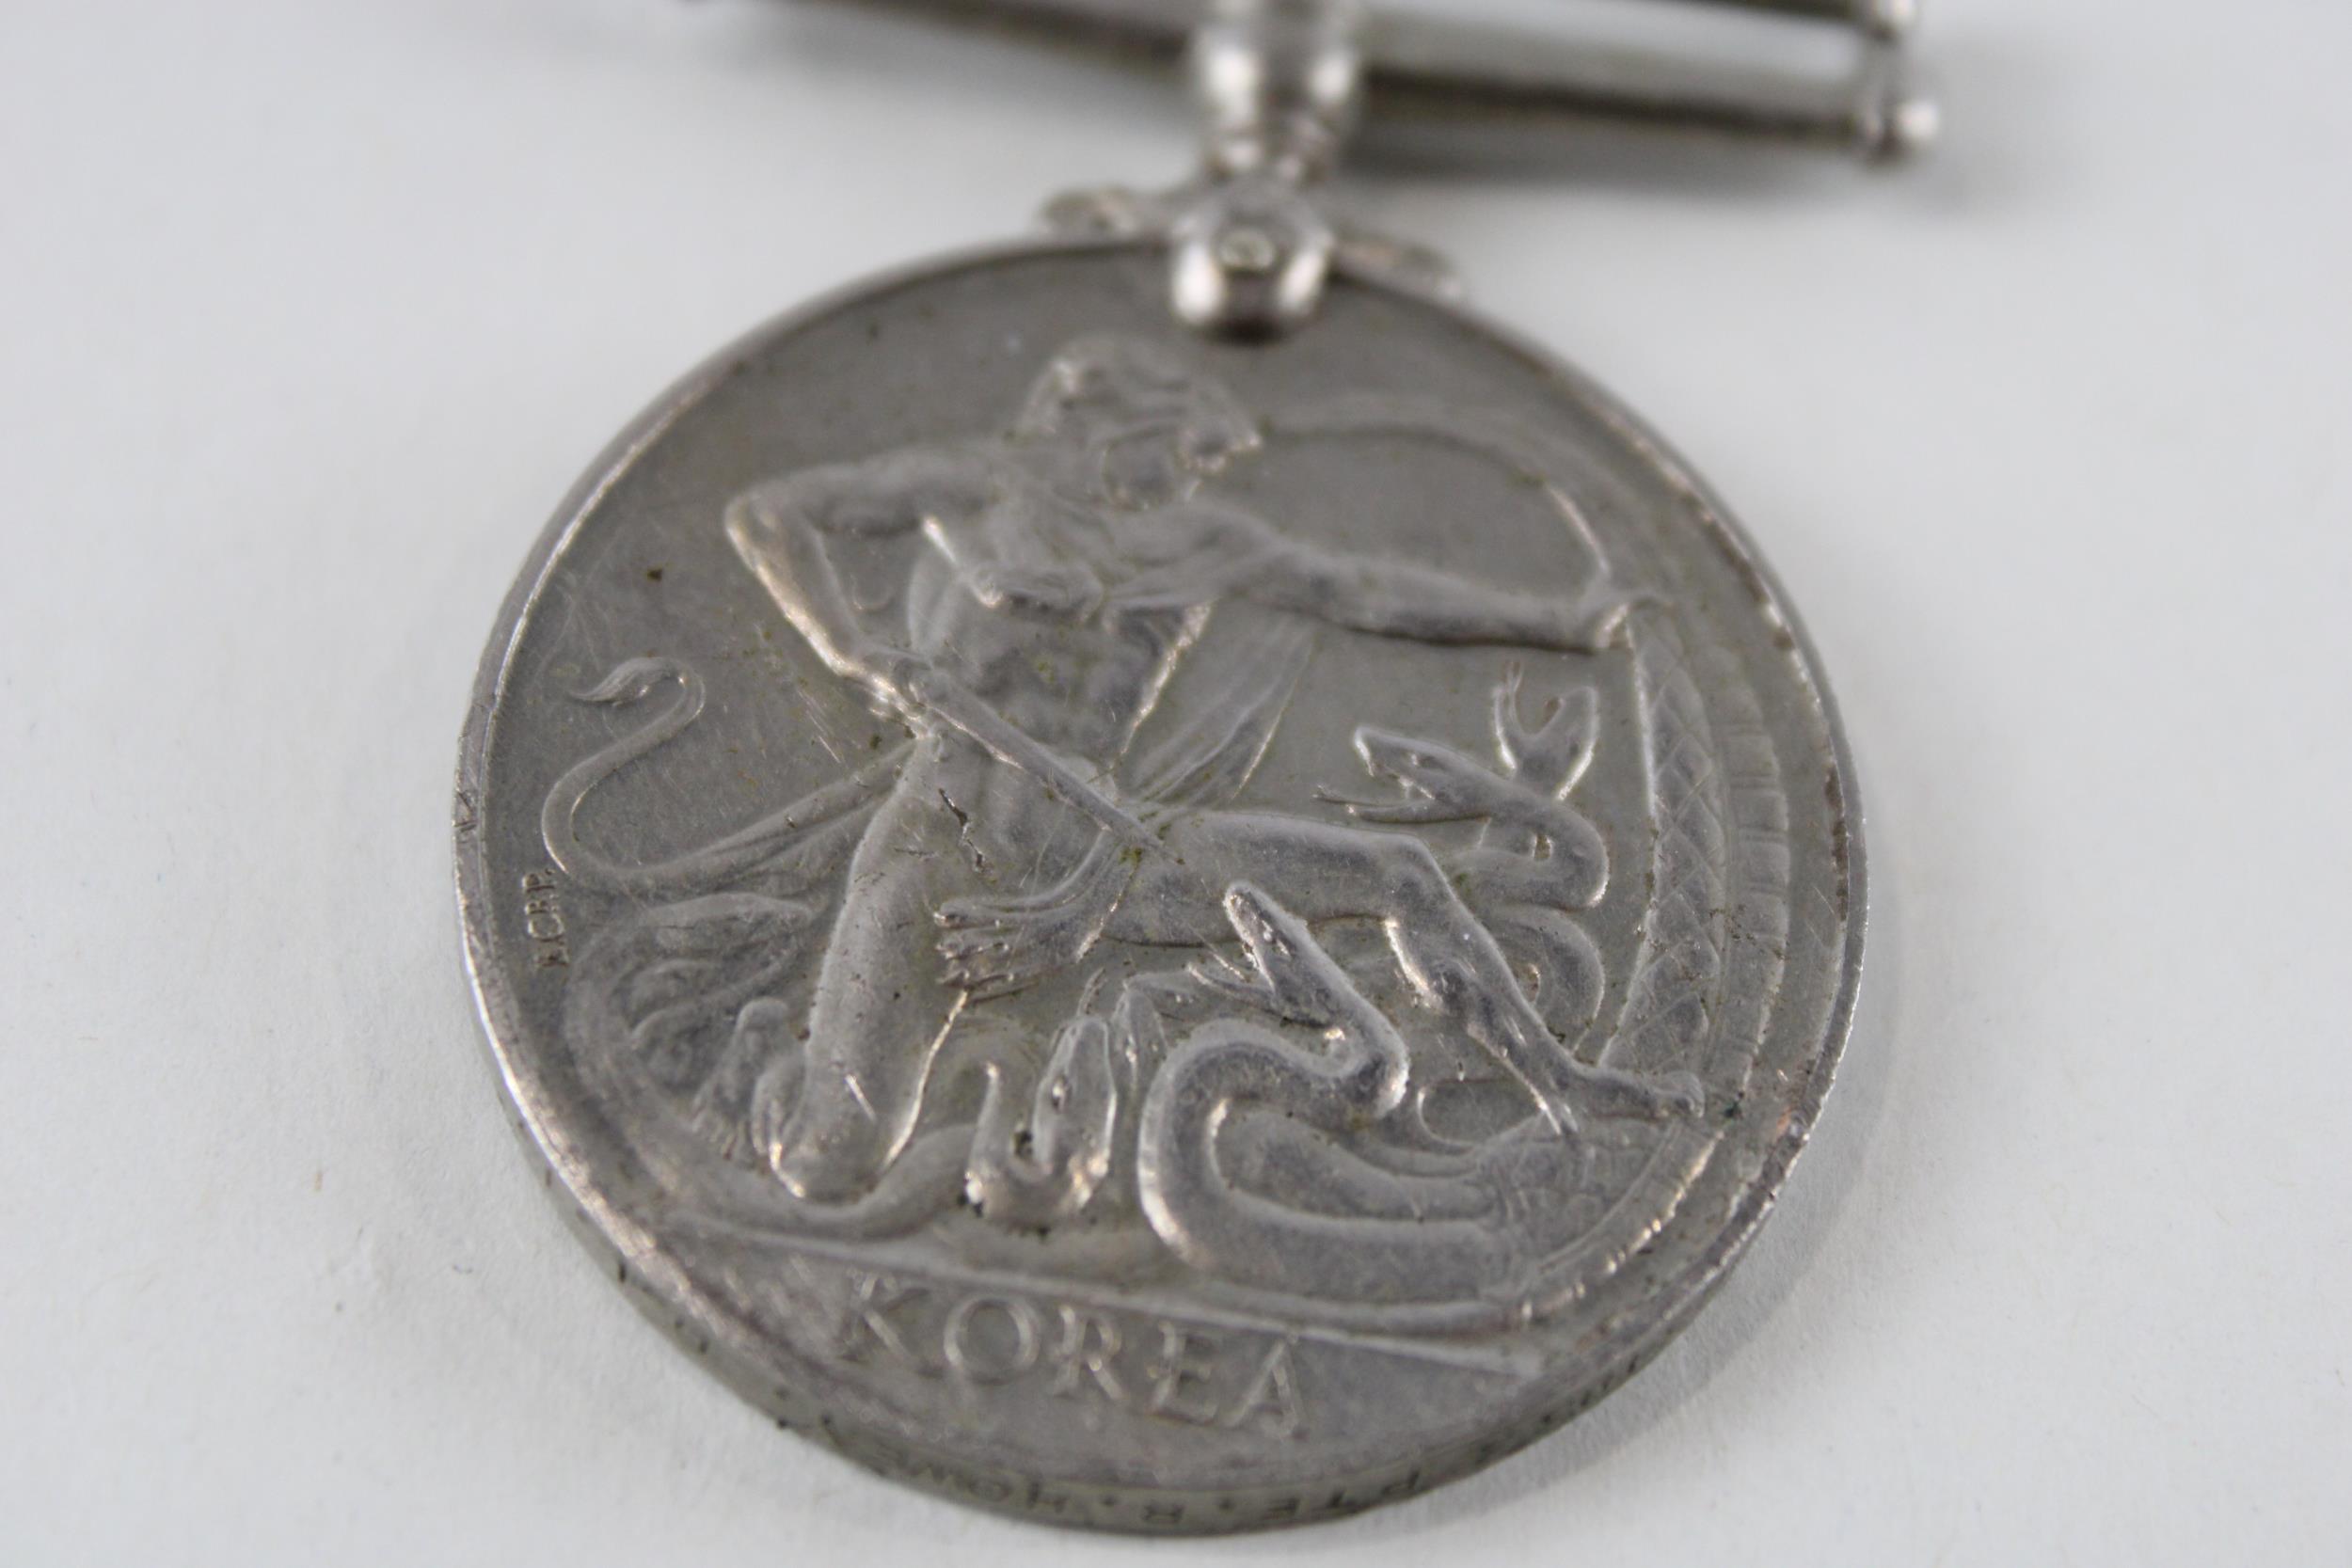 ER.II Queens Korea Medal. Named. 22634833 Pte. R. Howey D.L.I // ER.II Queens Korea Medal. Named. - Image 2 of 5